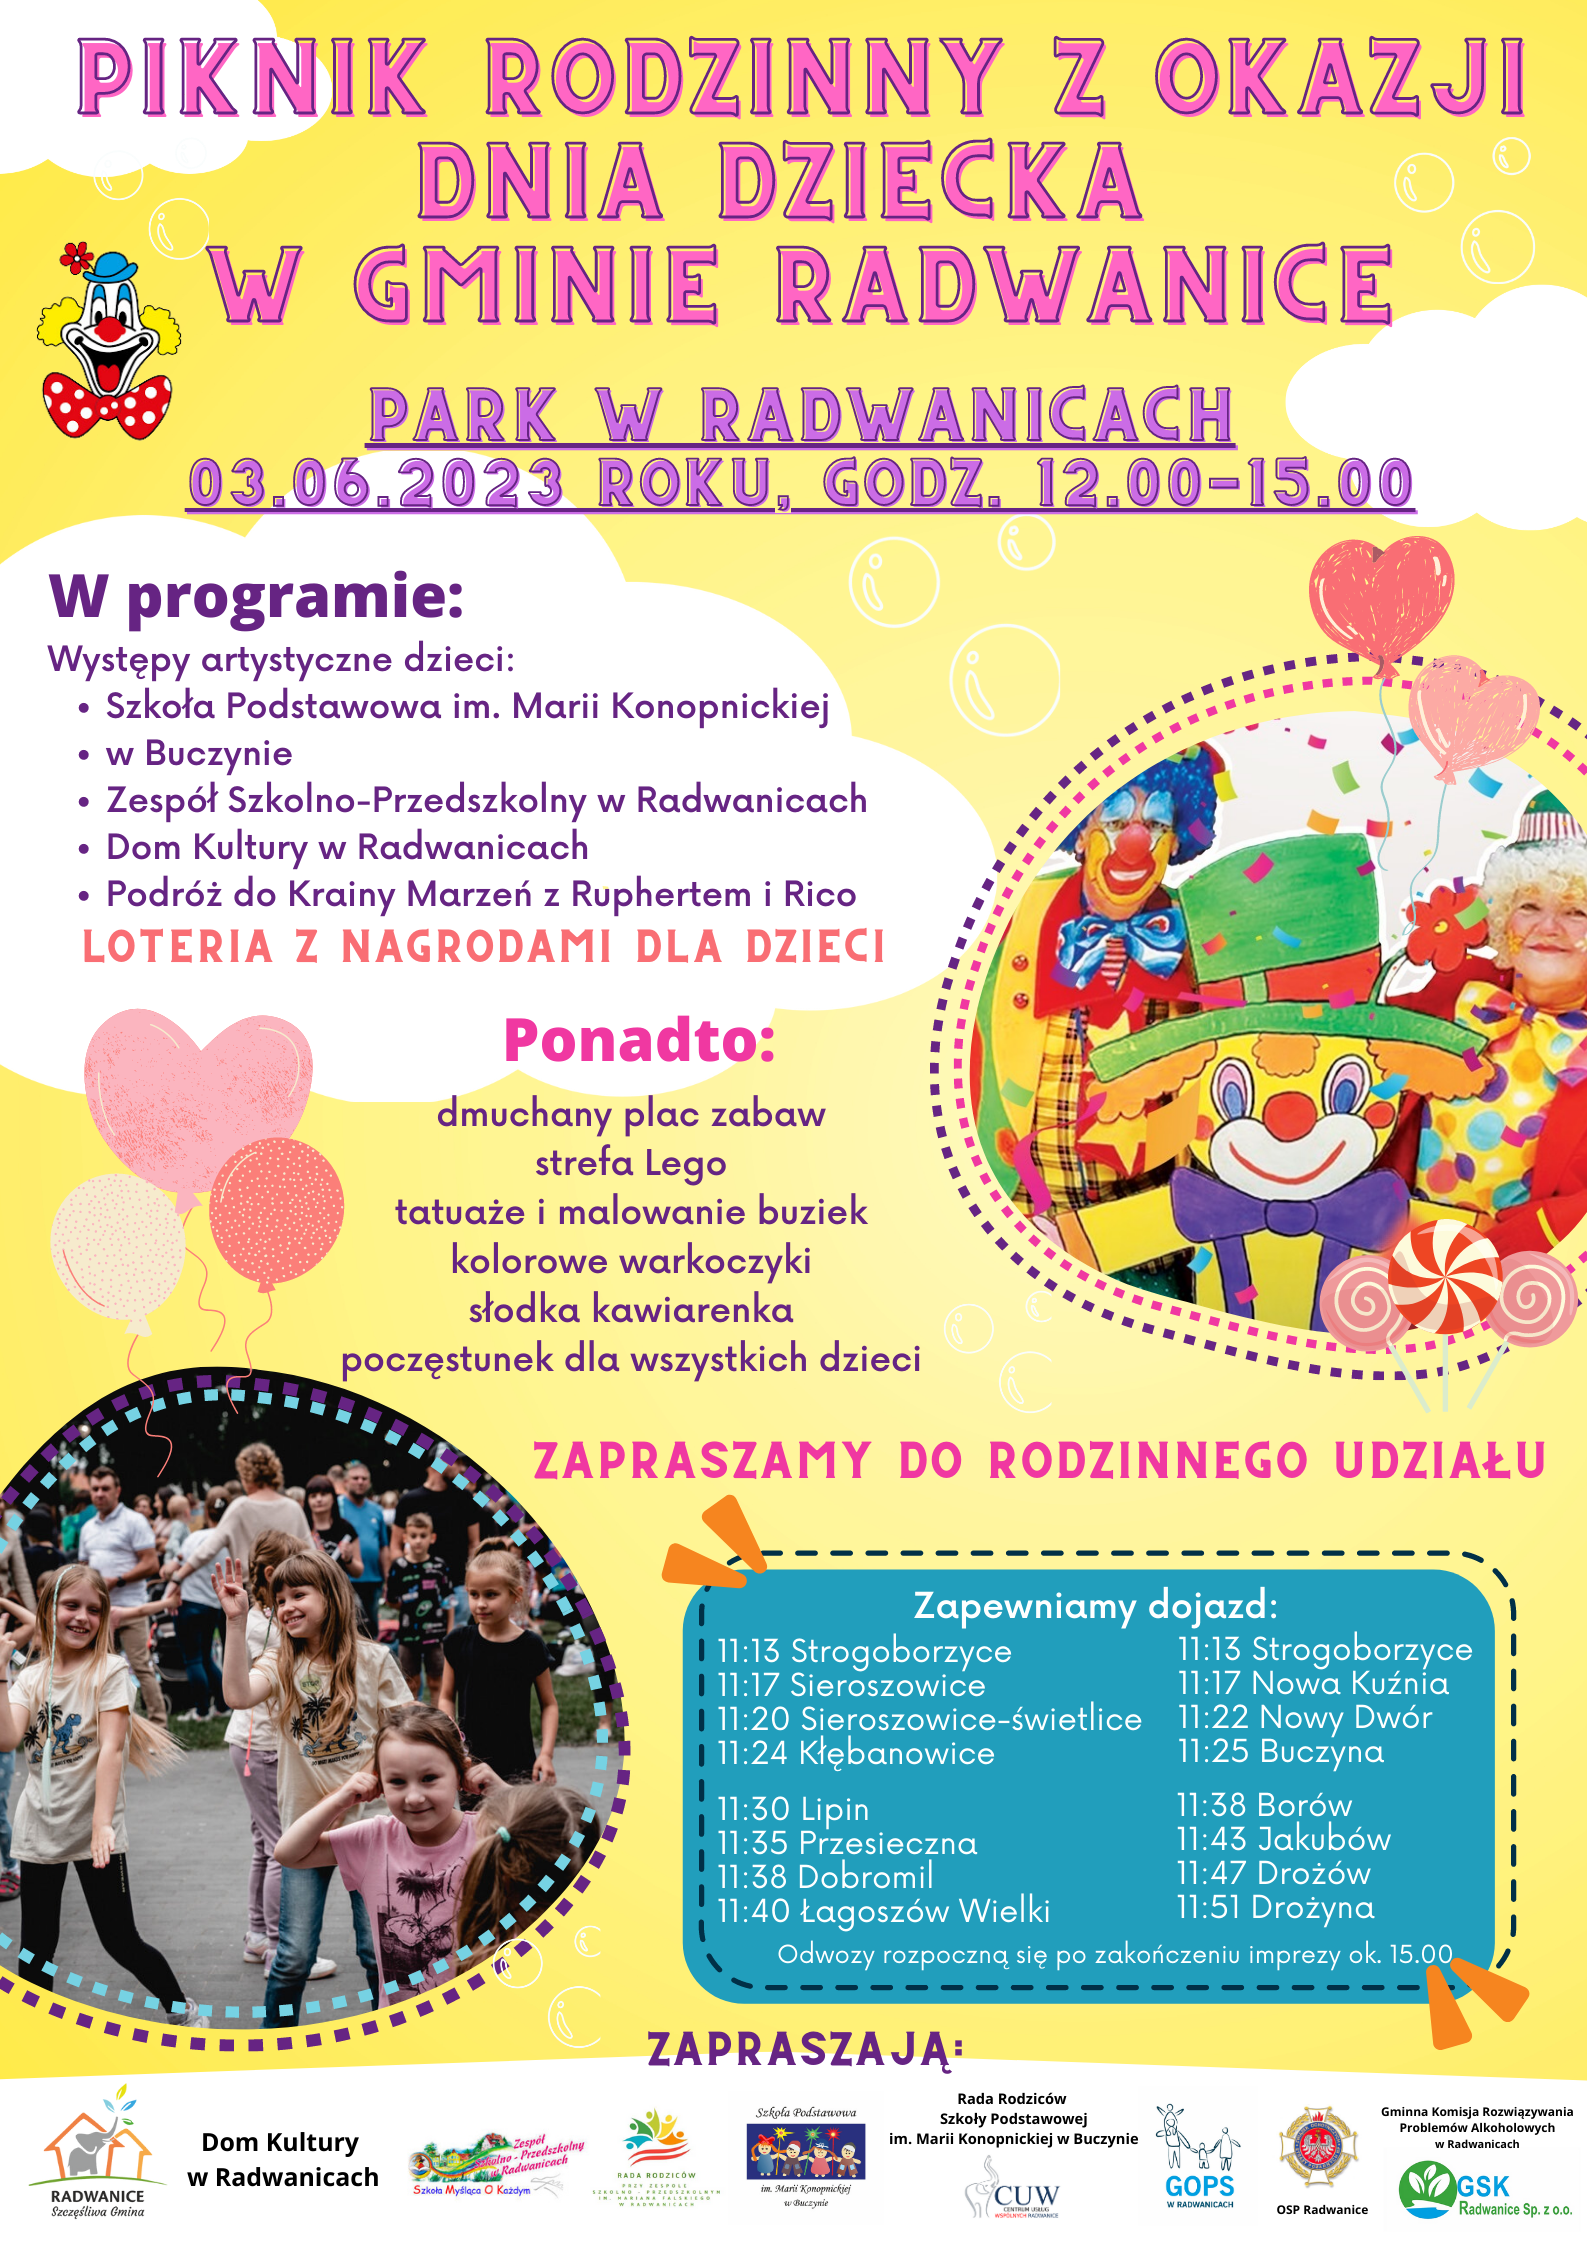 Piknik Rodzinny z okazji Dnia Dziecka w Gminie Radwanice - zdjęcie 1